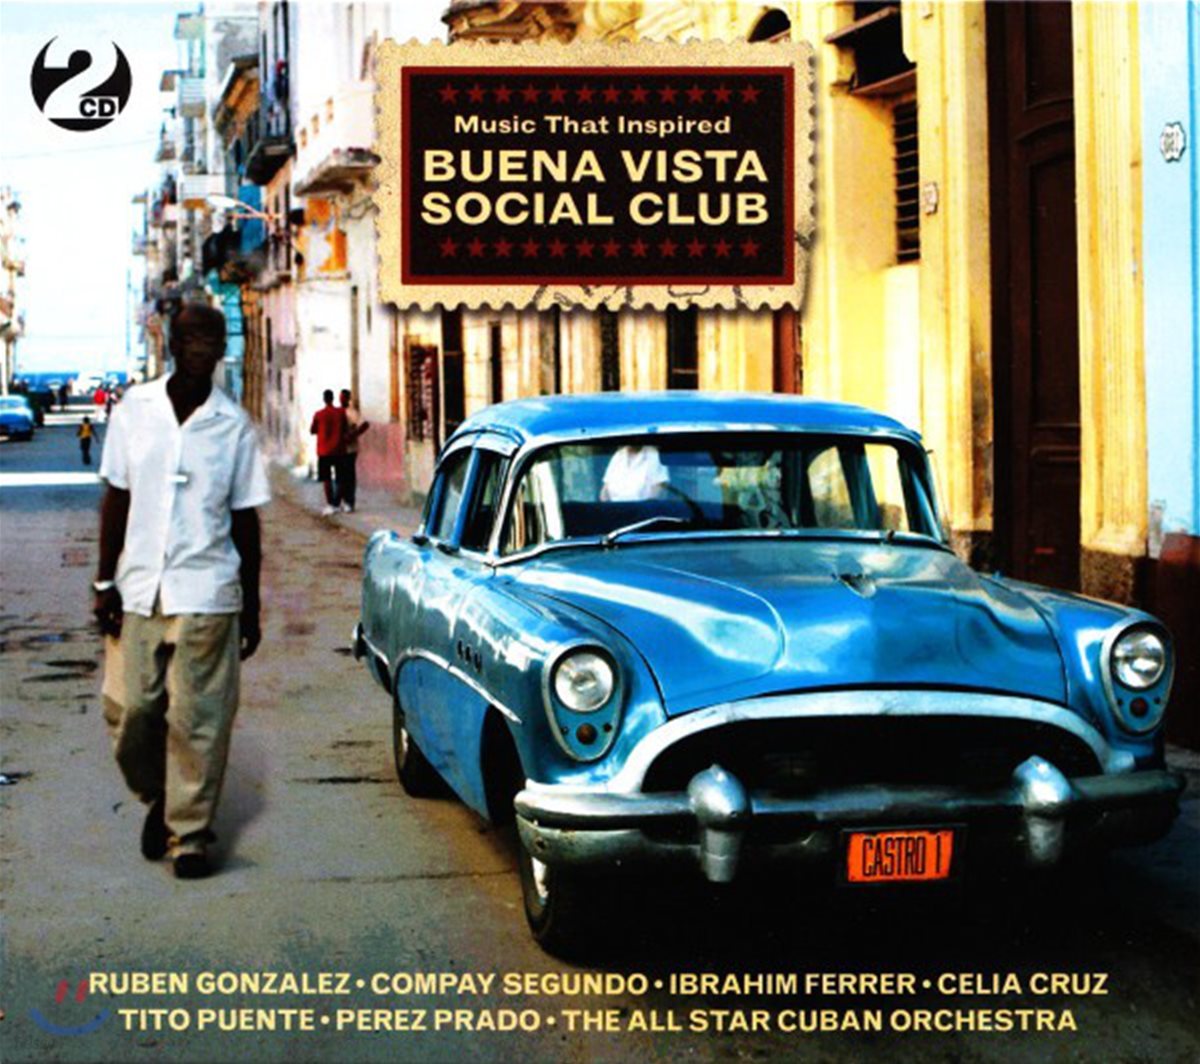 쿠바 음악 컬렉션 - 부에나 비스타 소설 클럽 (Music That Inspired Buena Vista Social Club)